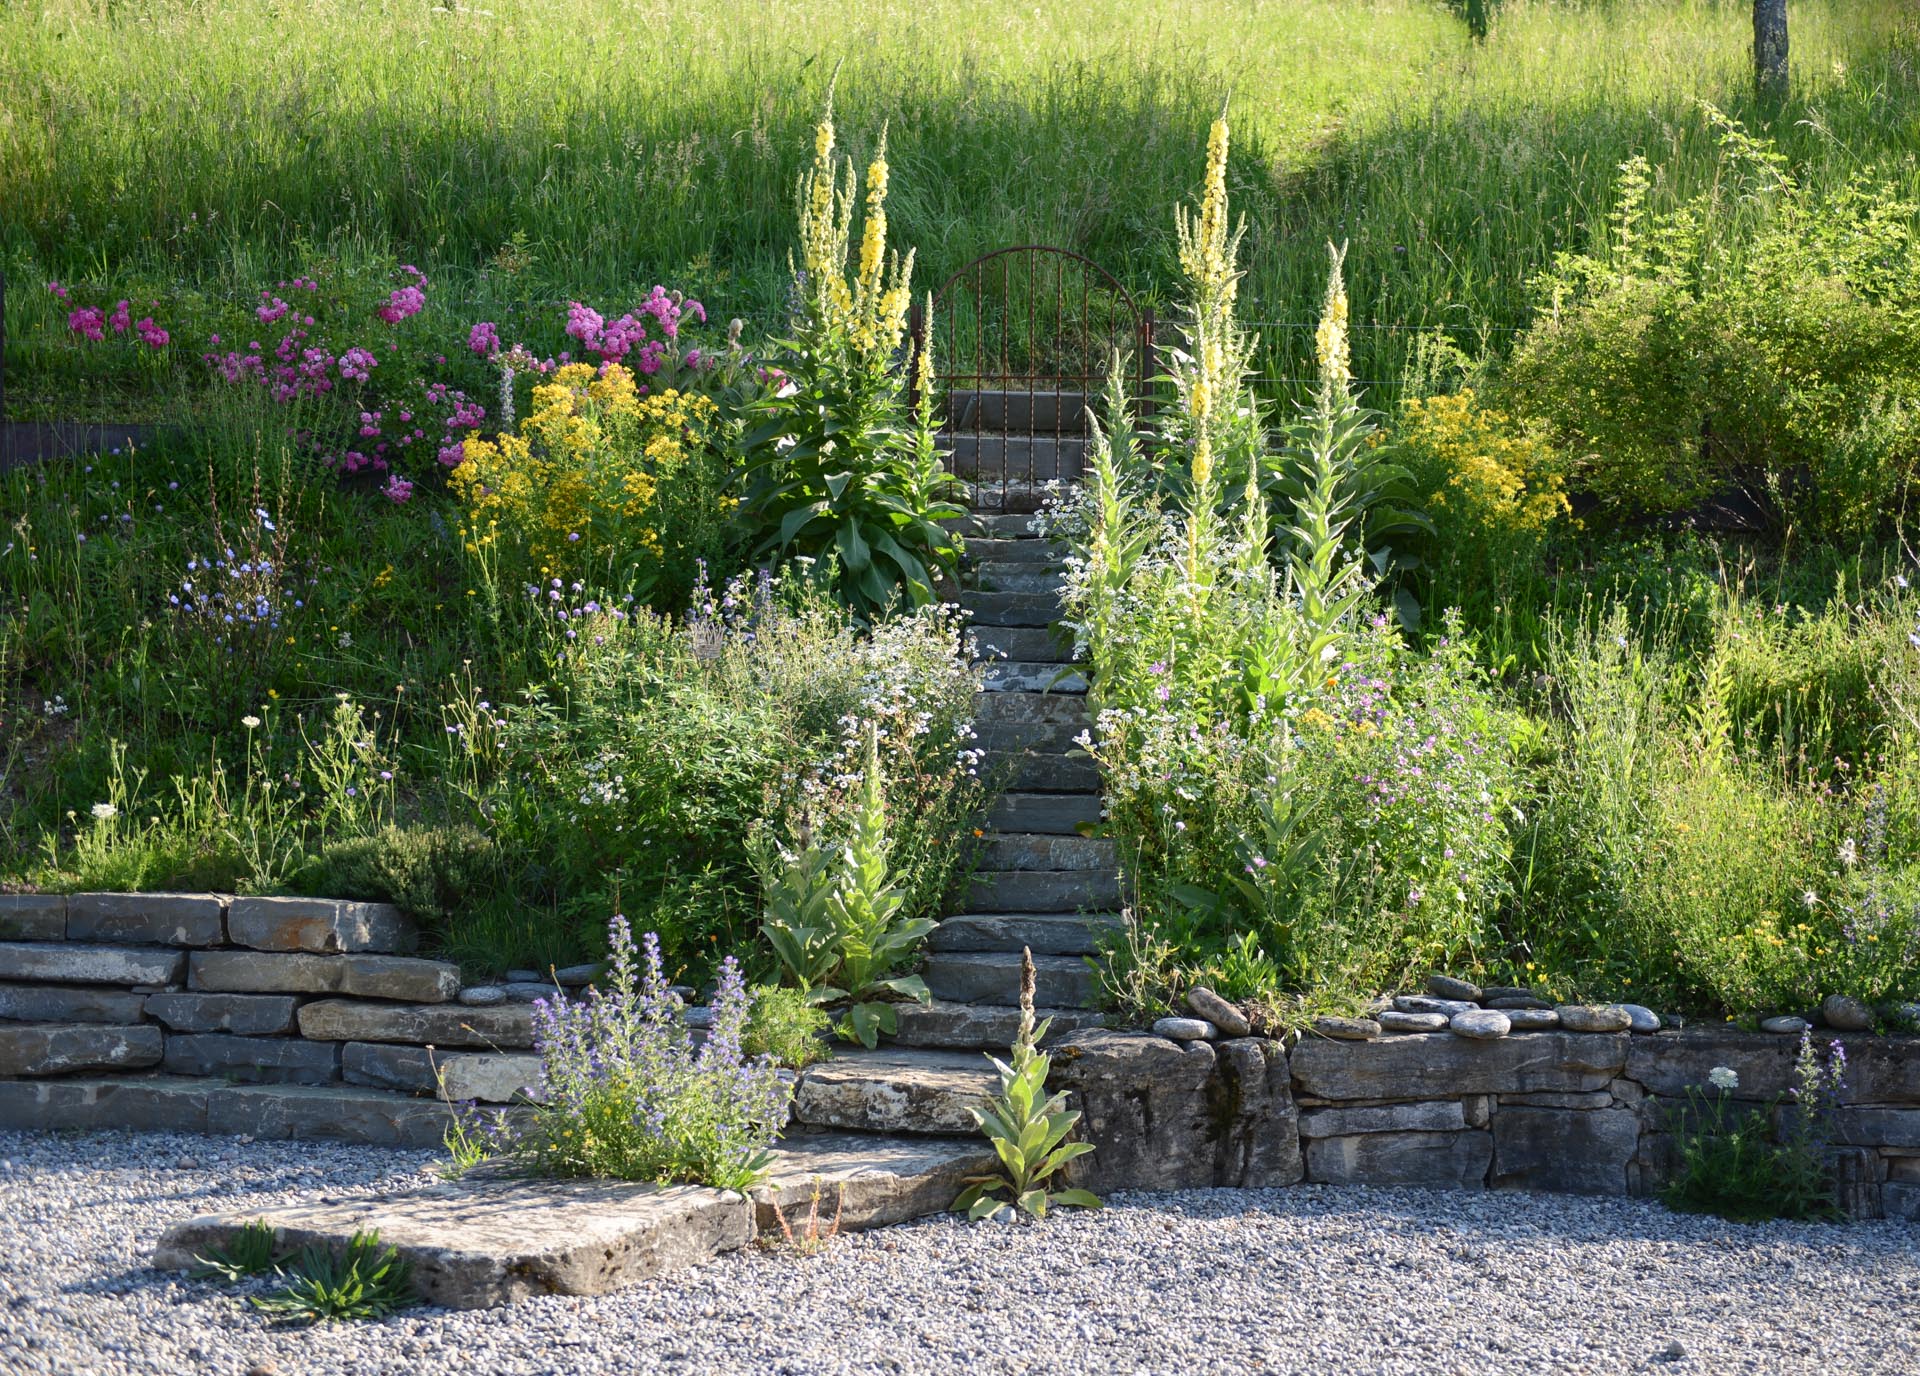 Natursteintreppe: Eine Treppe aus Natursteinen, die verschiedene Gartenebenen verbindet.